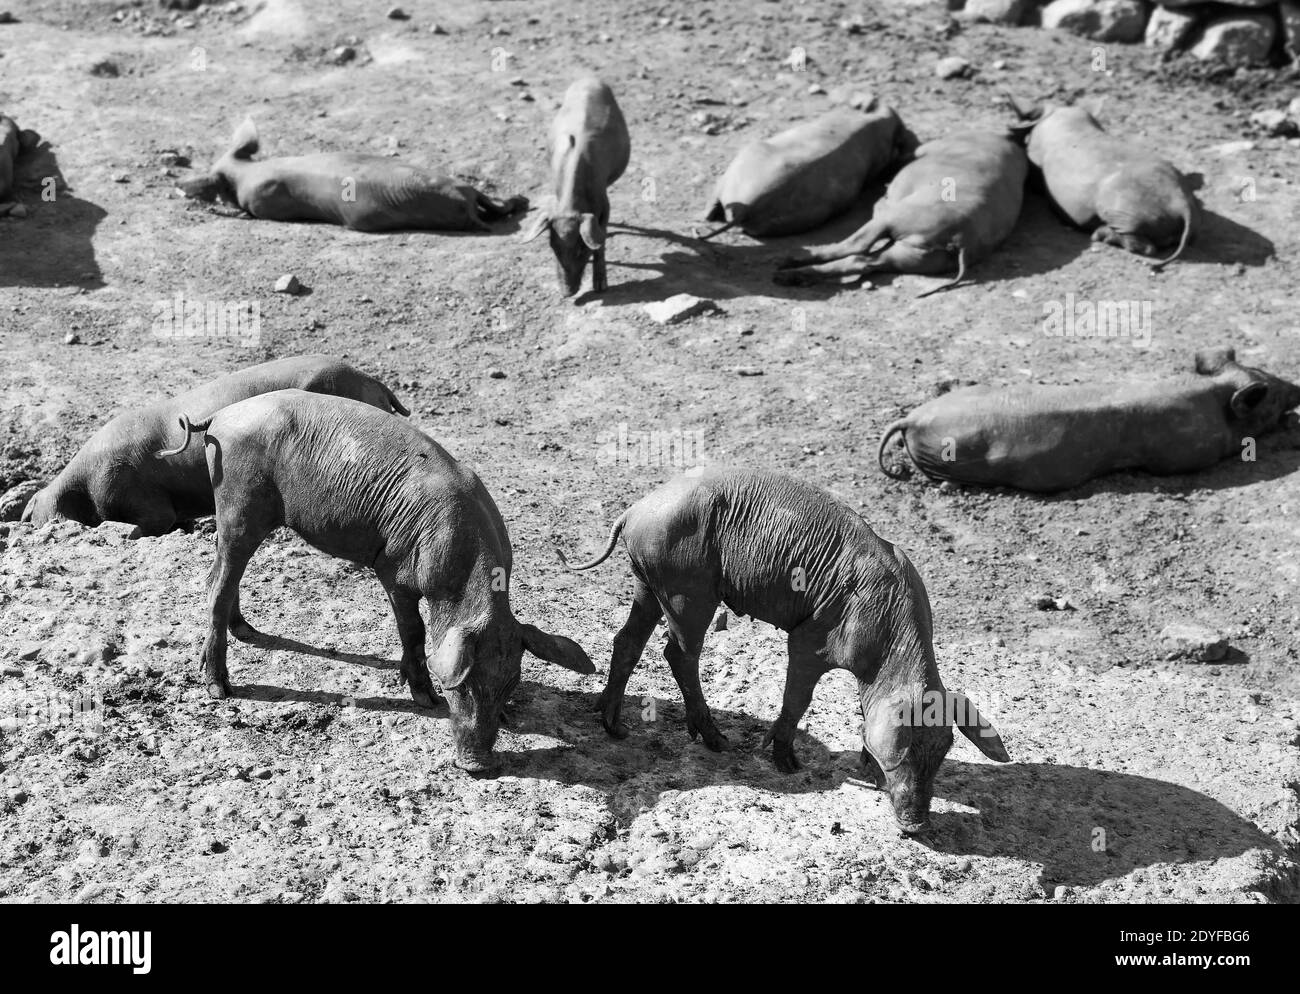 Une litière de cochons noirs sur une ferme en niveaux de gris Banque D'Images